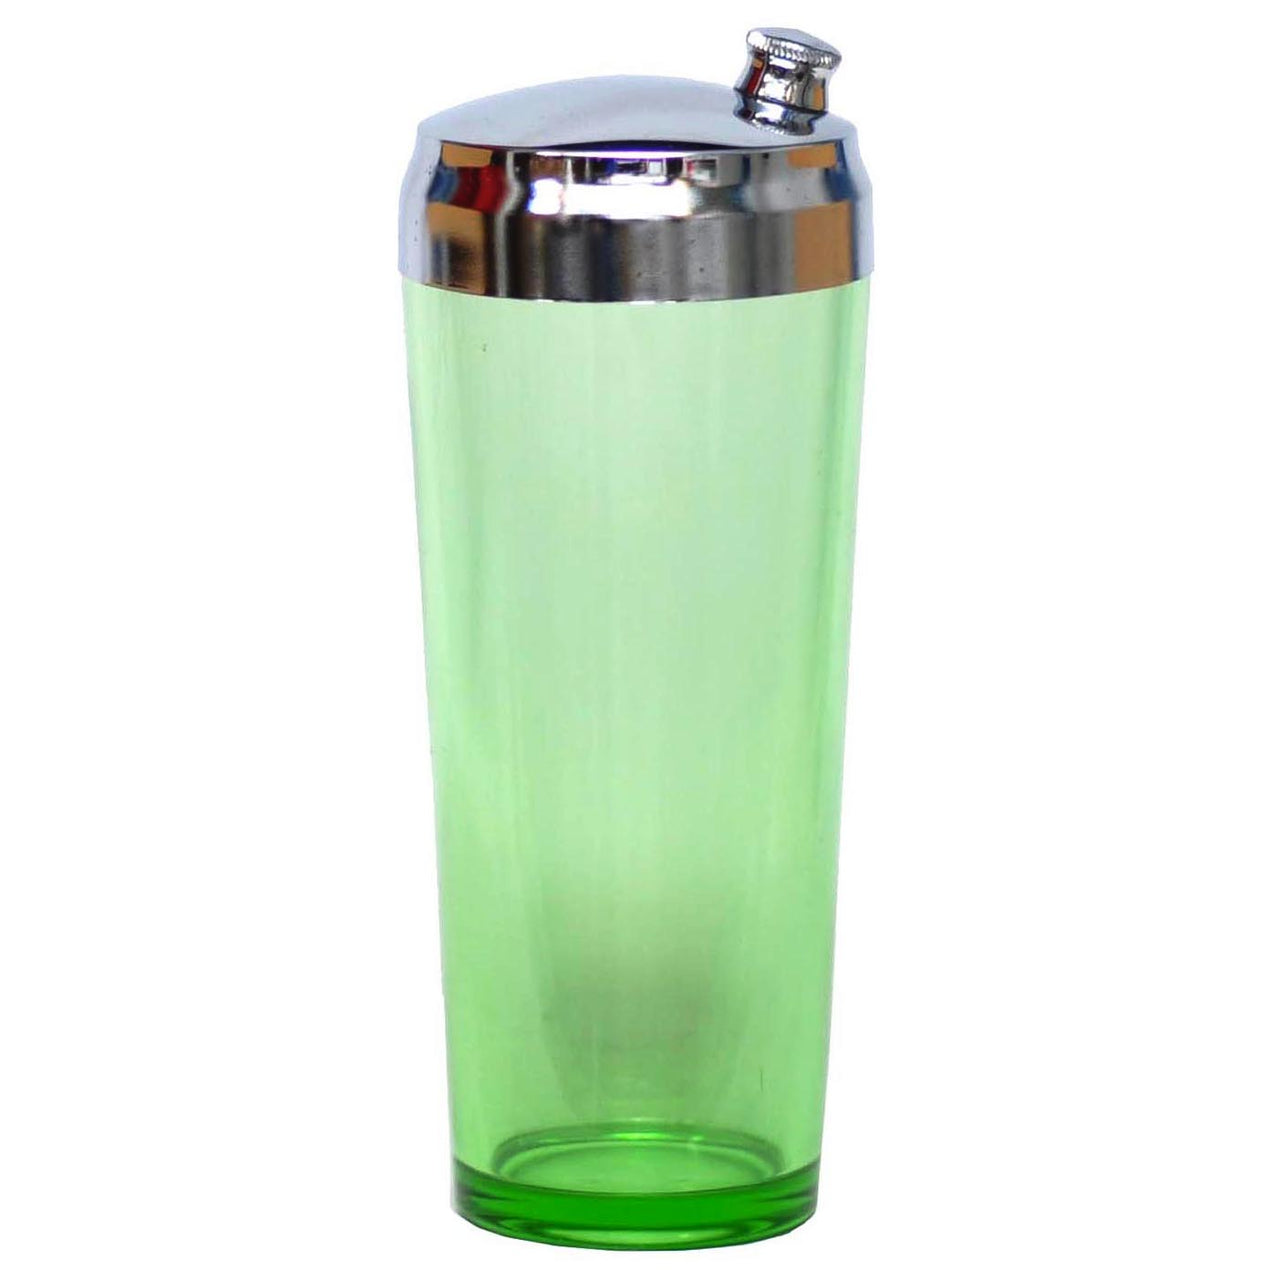 https://thehourshop.com/cdn/shop/products/15736-vintage-green-vaseline-glass-cocktail-shaker_1280x1280.jpg?v=1576082000